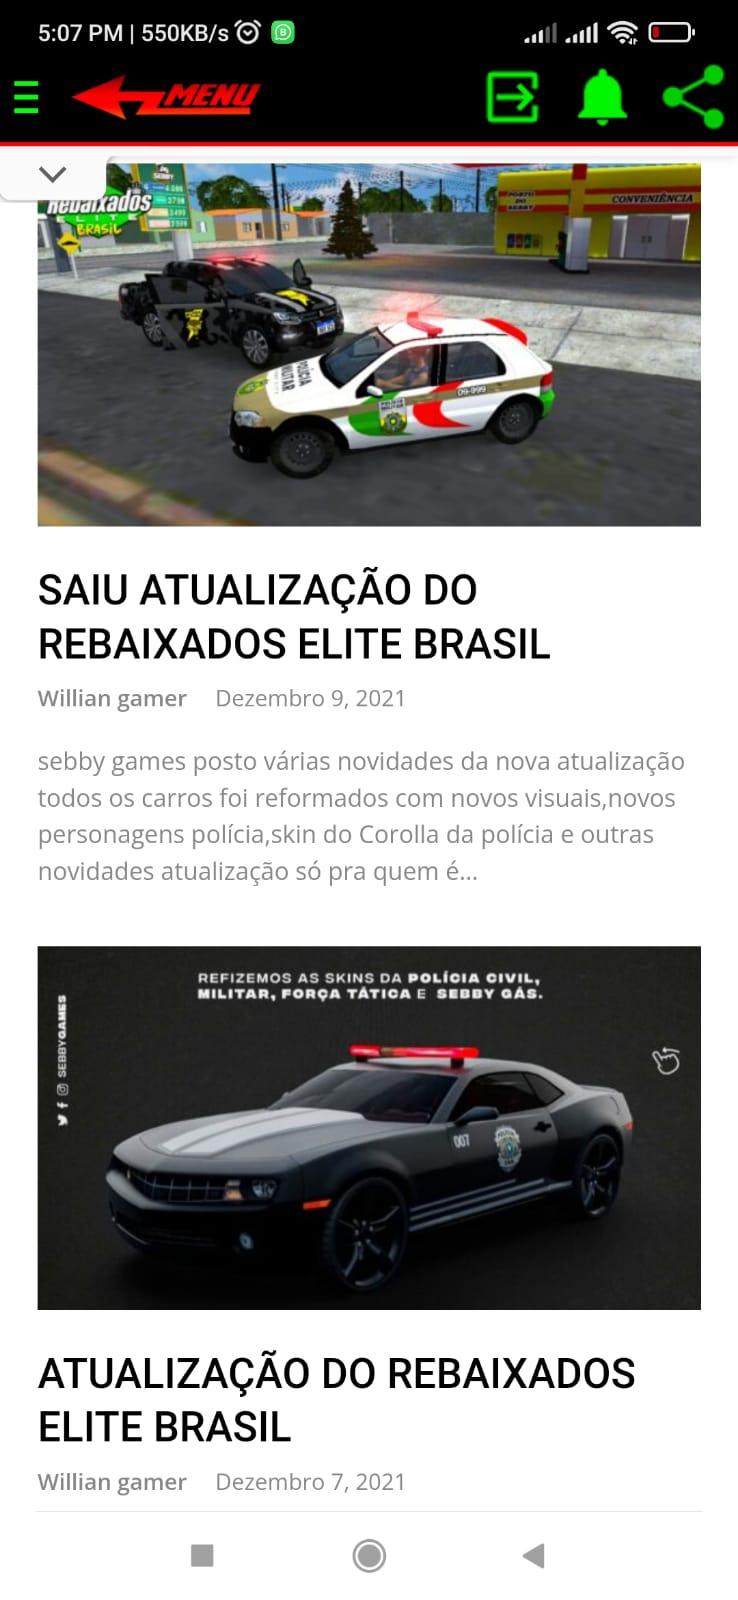 Rebaixados Elite Brasil - Atualização EXCLUSIVA (Corolla e Novos